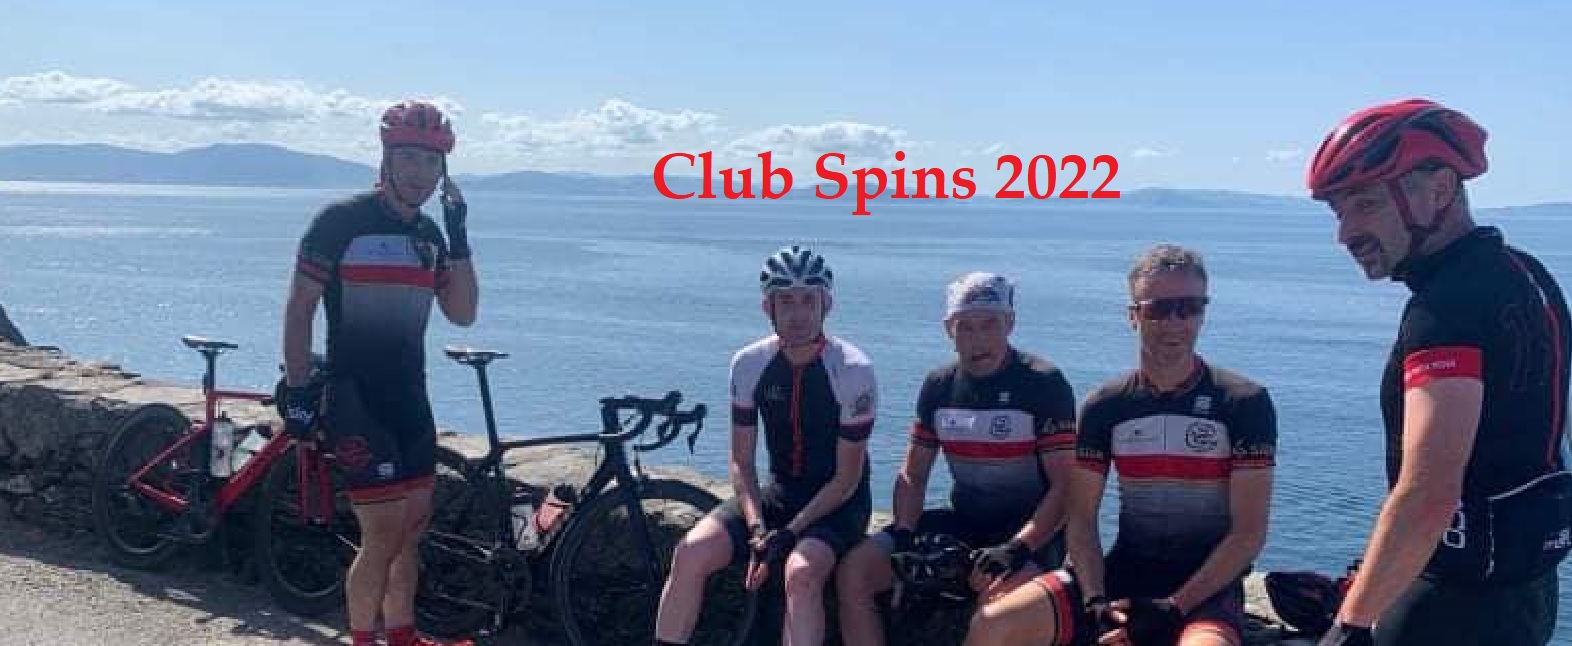 CLUB SPINS 2022 March